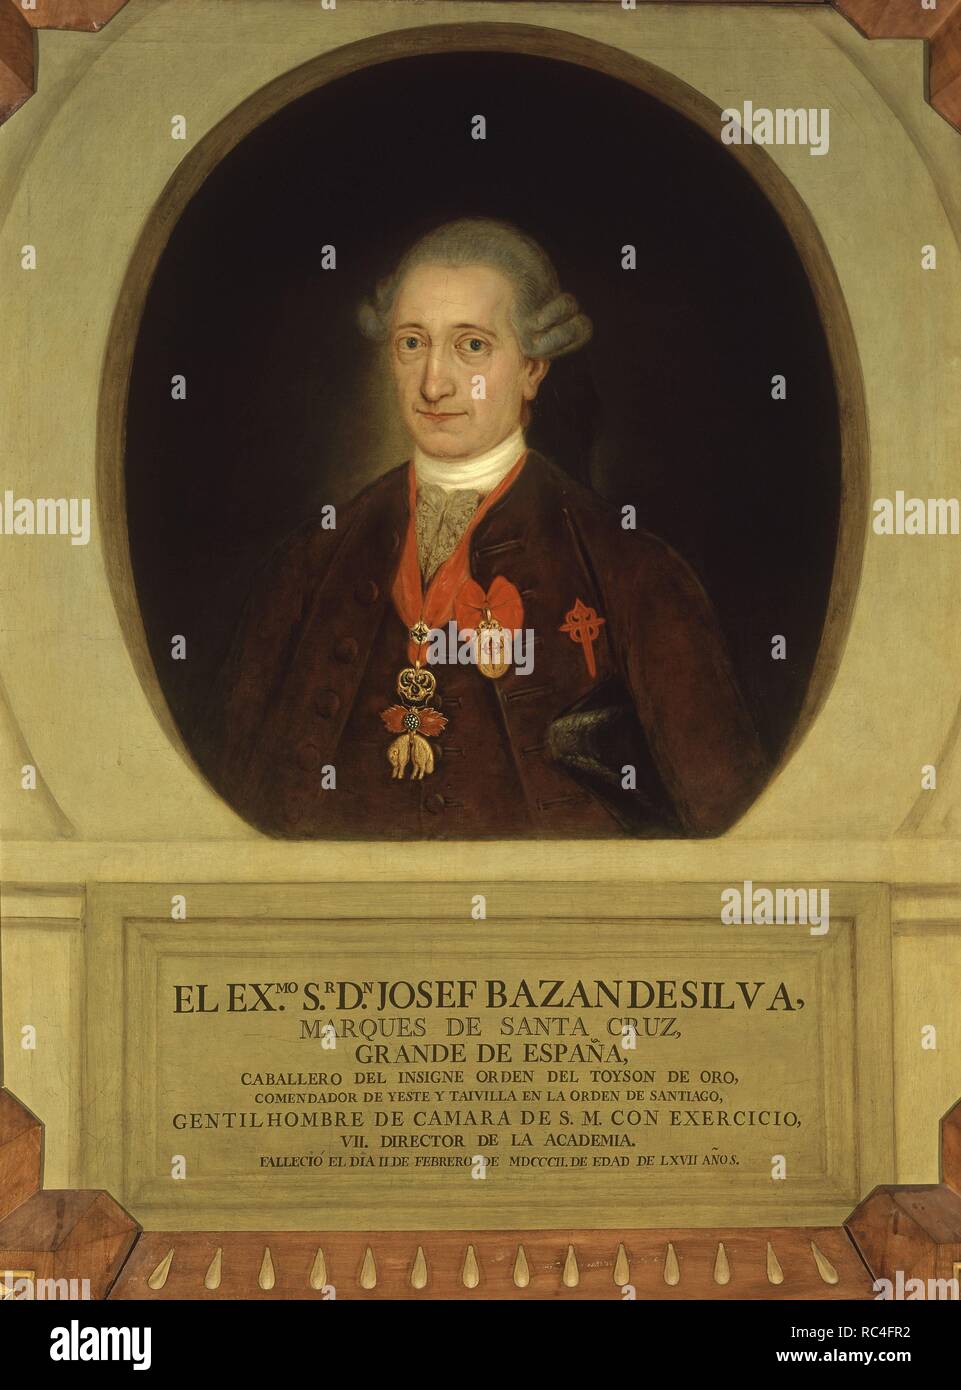 JOSE BAZAN DE SILVA- MARQUES DE SANTA CRUZ ( +1802) - SEPTIMO DIRECTOR DE LA ACADEMIA-O/L. Location: ACADEMIA DE LA LENGUA-COLECCION. MADRID. SPAIN. Stock Photo